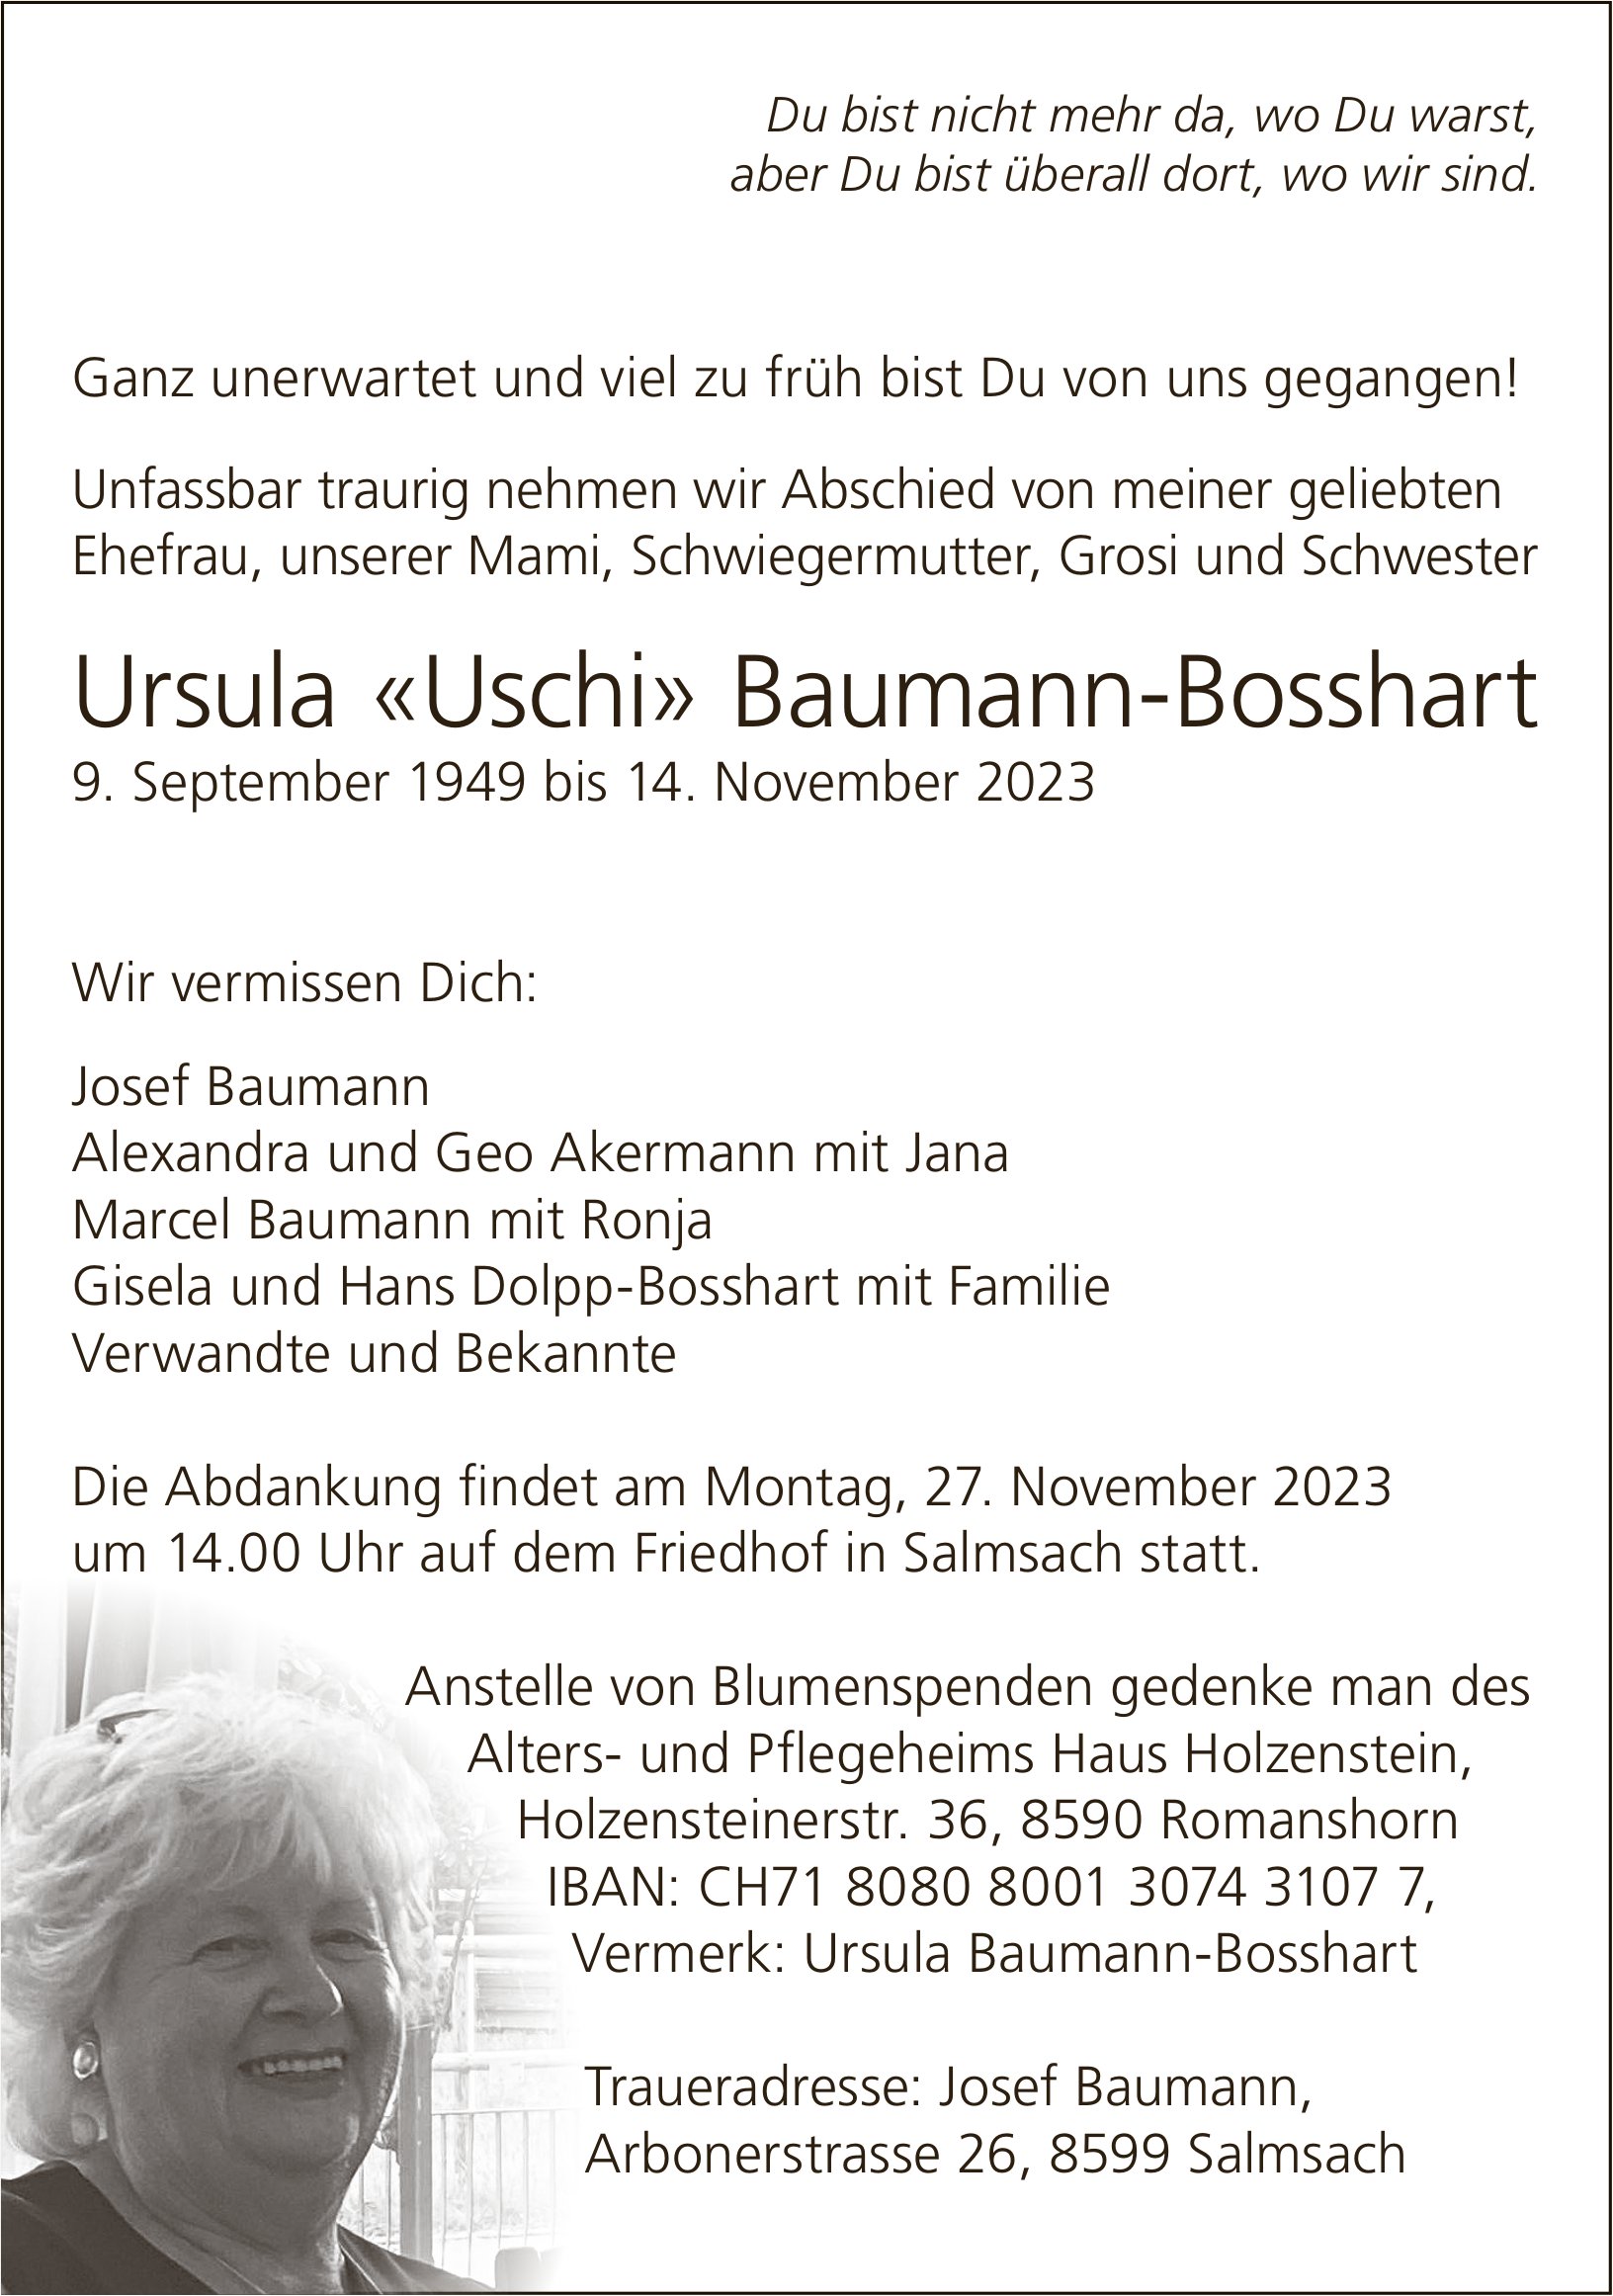 Baumann-Bosshart Ursula «Uschi», November 2023 / TA